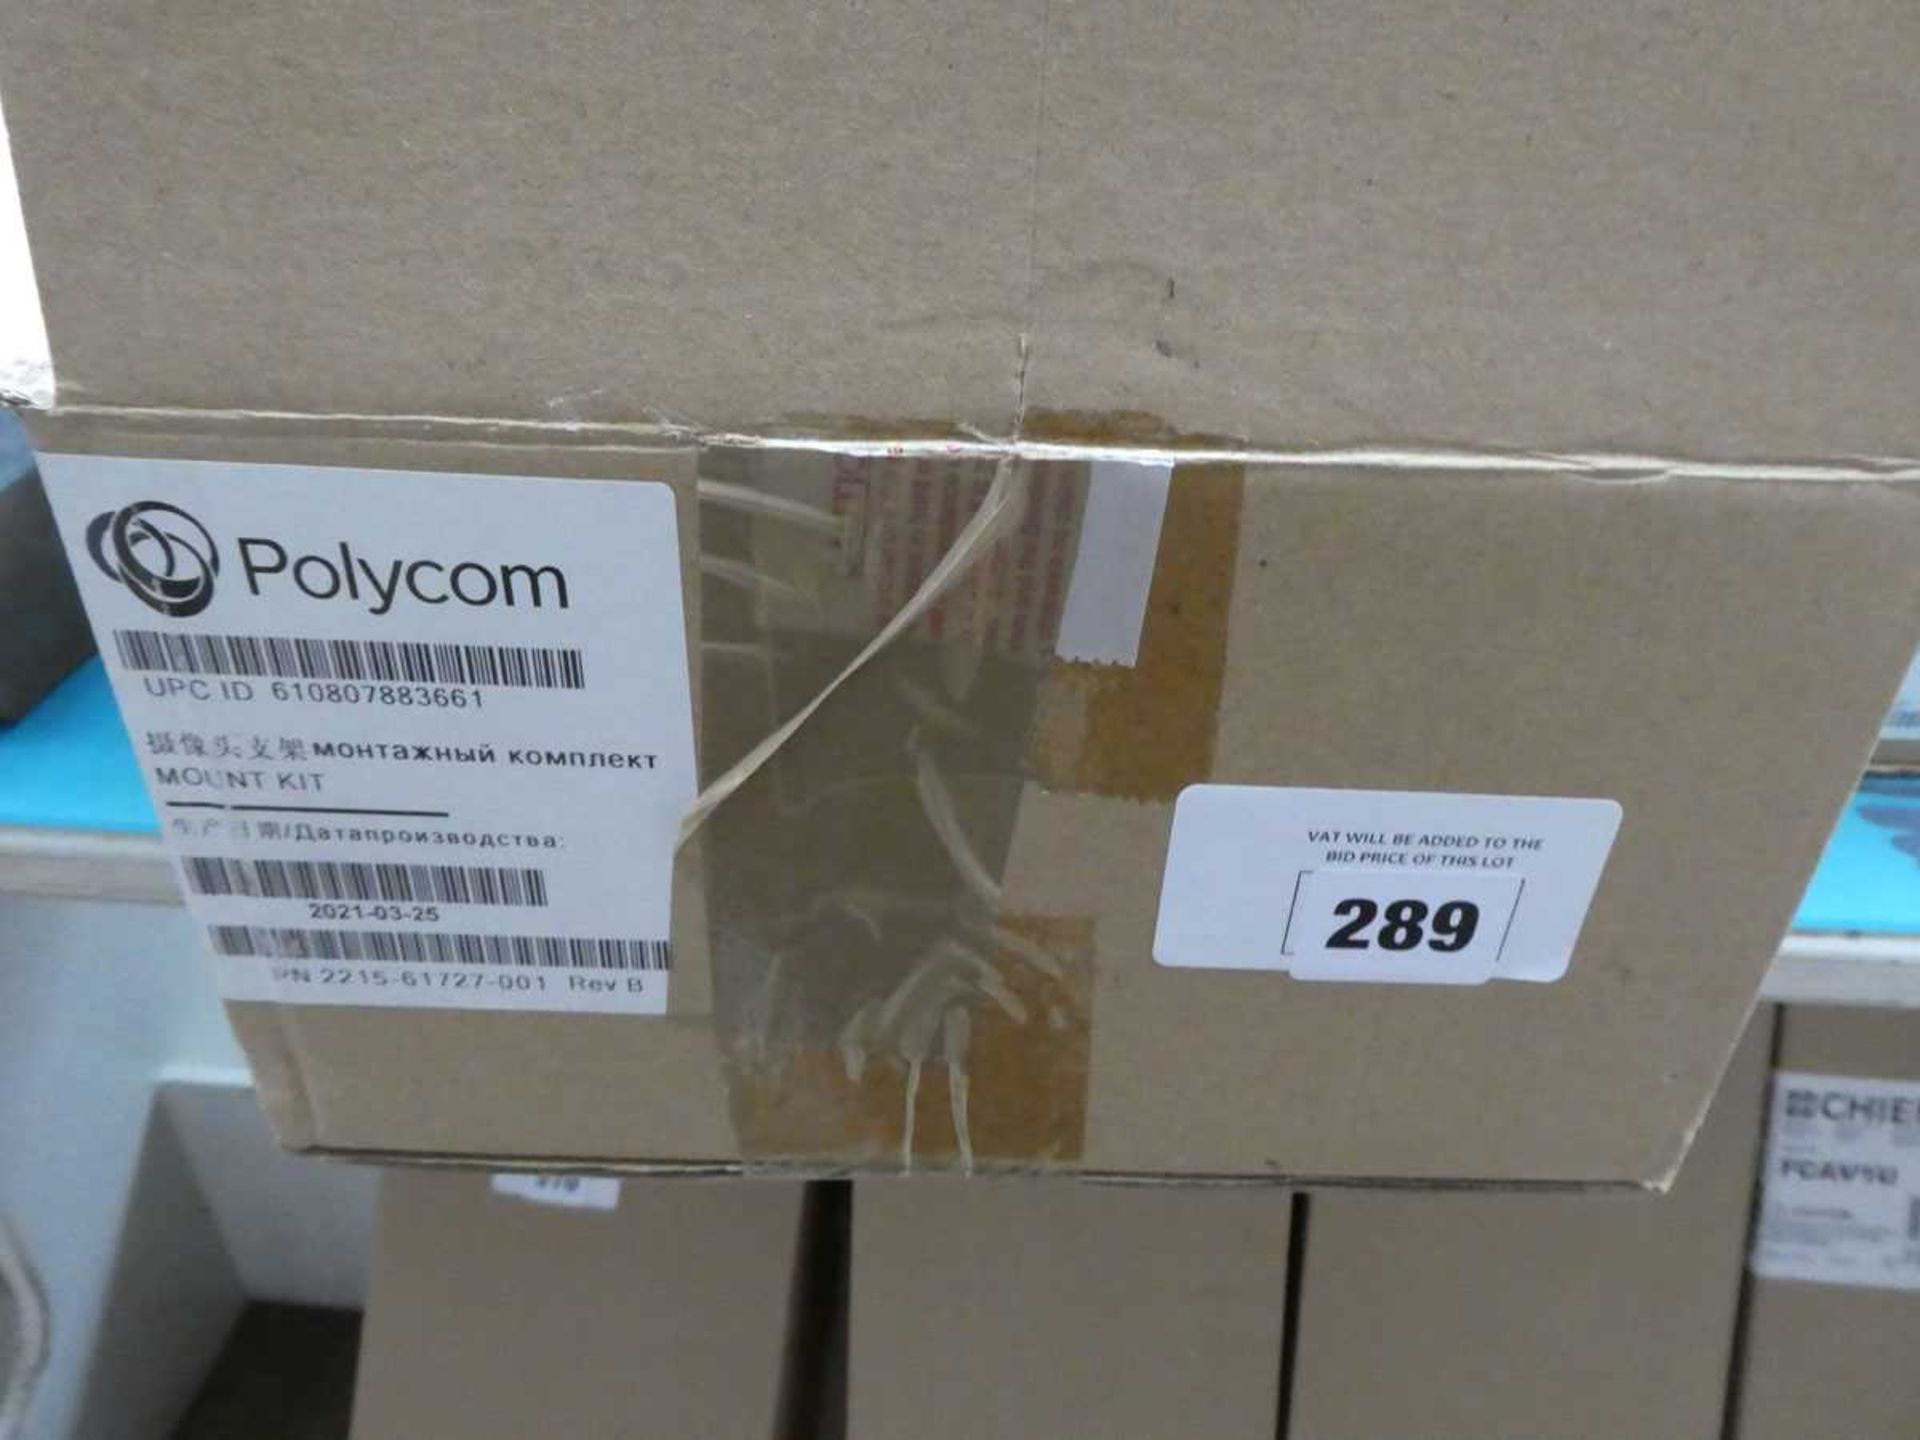 +VAT Polycom Eagle Eye 1v Mk4 USB camera mounting bracket in box - Bild 2 aus 2